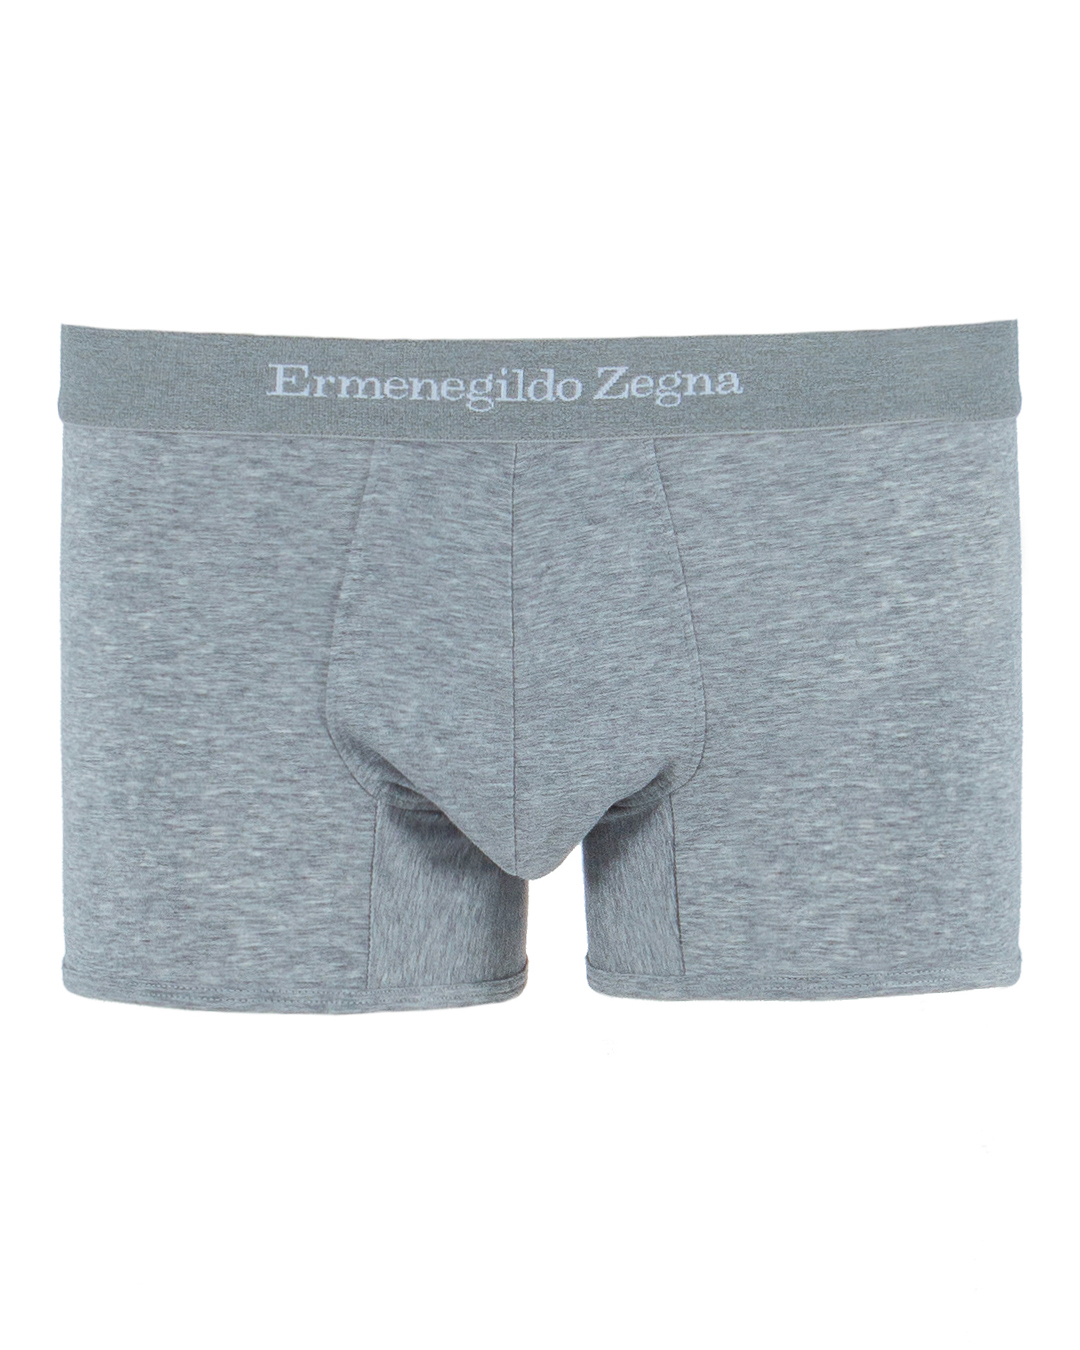 Ermenegildo Zegna с брендированной линией пояса  артикул  марки Ermenegildo Zegna купить за 3000 руб.